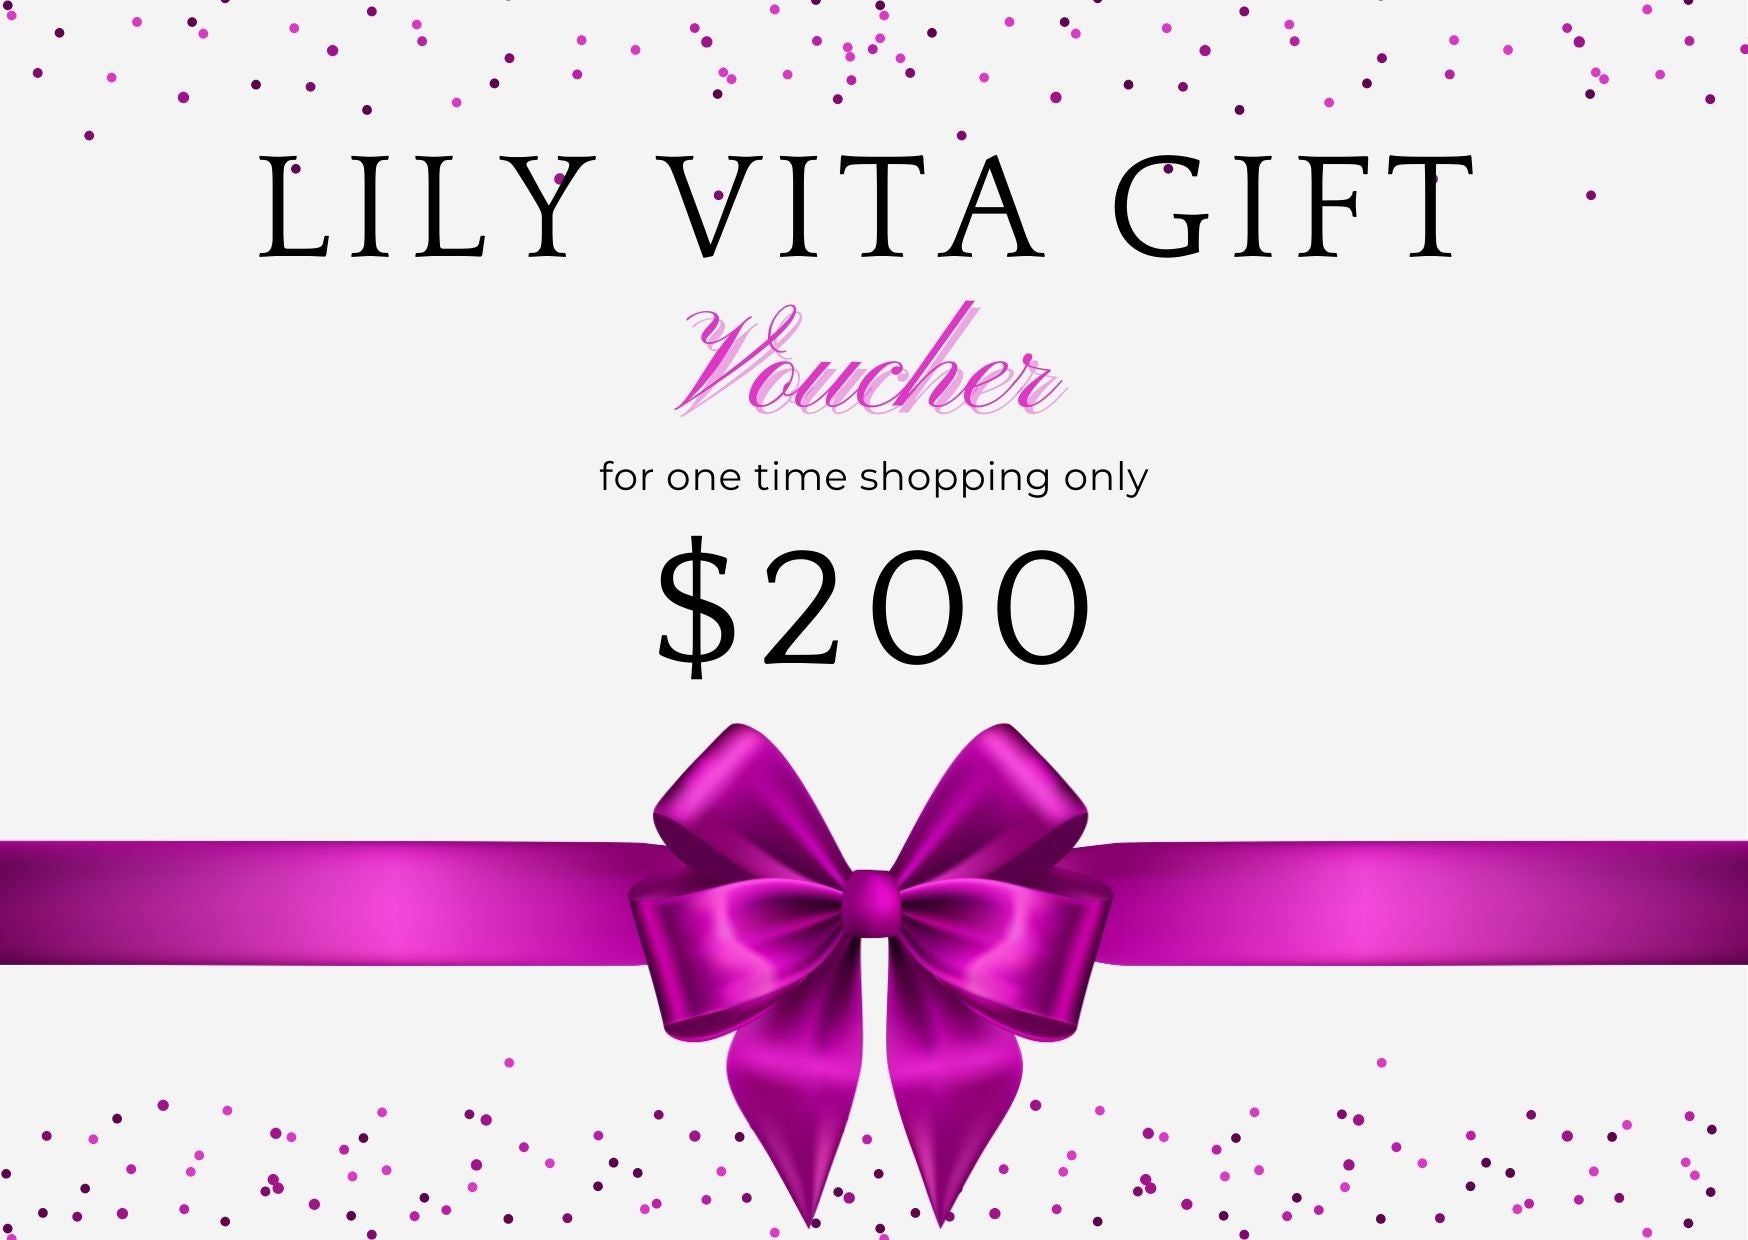 LILY VITA GIFT VOUCHERS $200